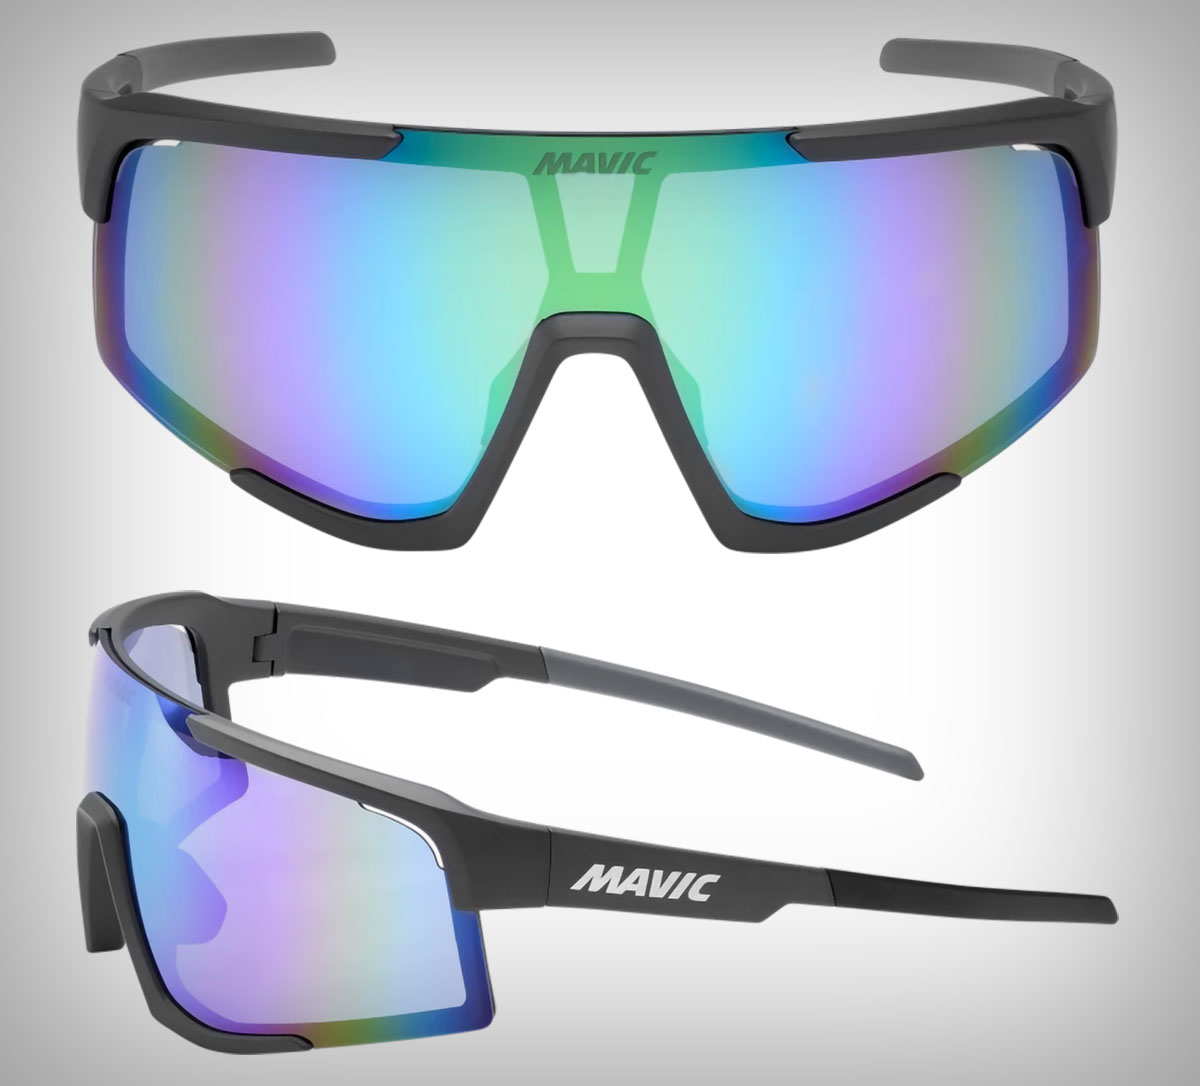 Mavic se estrena en el segmento de las gafas de ciclismo con el lanzamiento de las MVS Aeroframe y MVS Shield